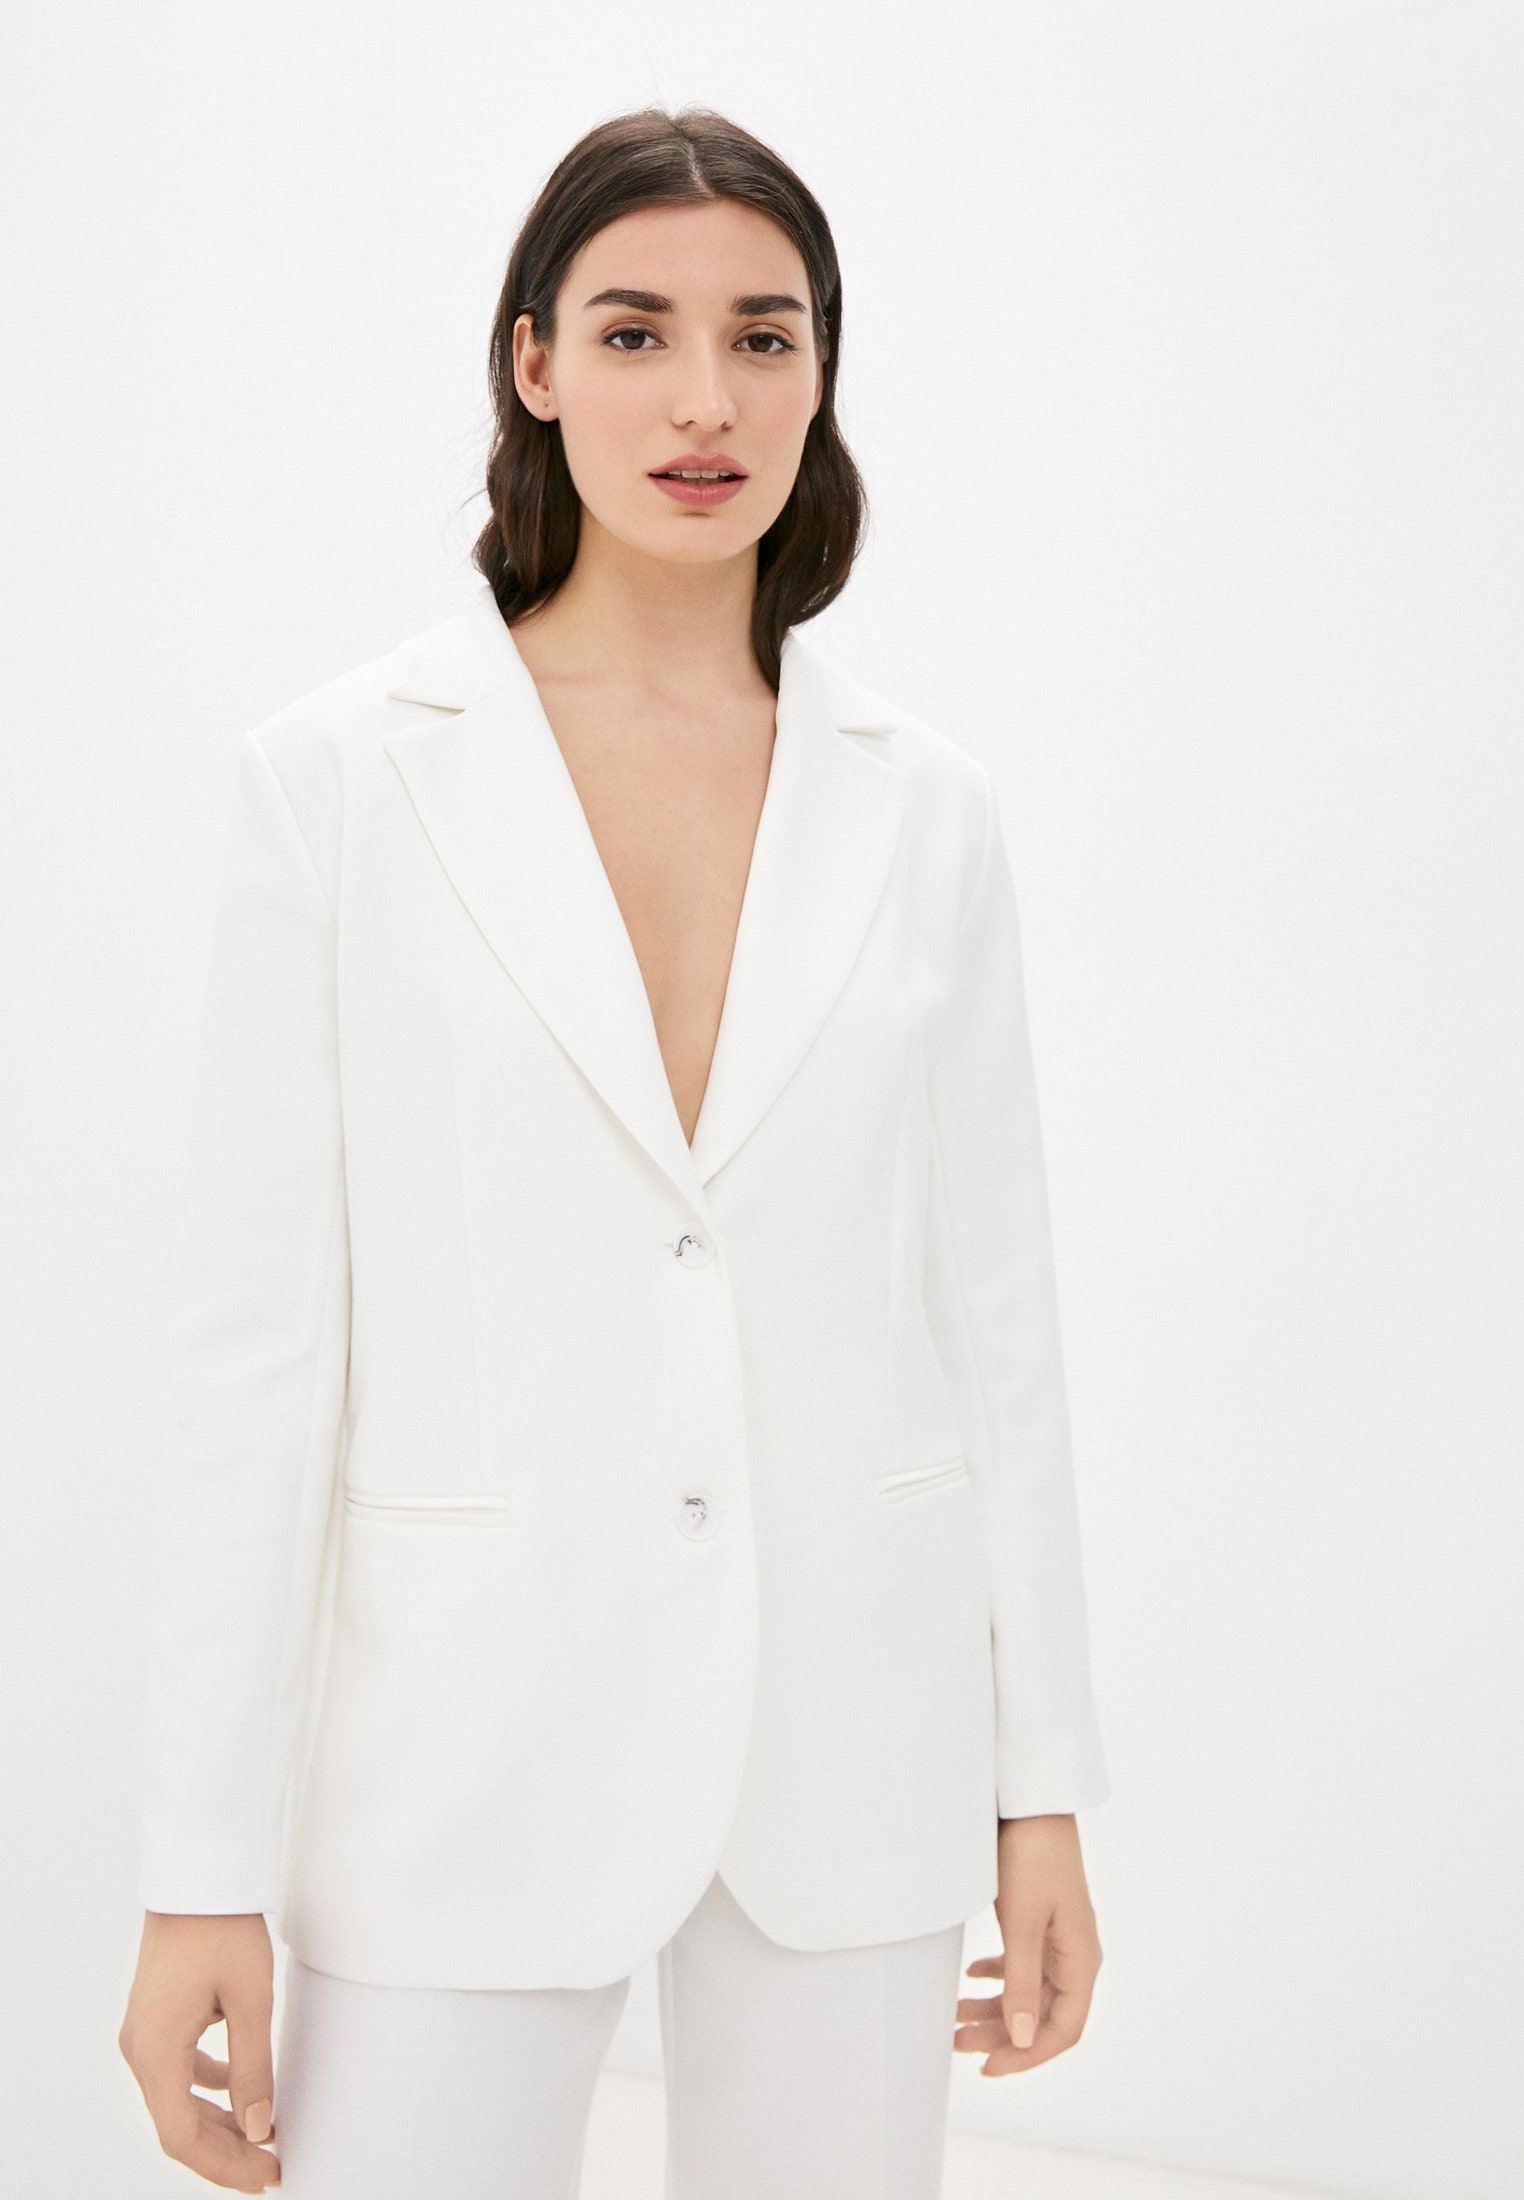 Образ Виктории Бекхэм джинсы клеш блузка белый пиджак. Универсальная комбинация на утро день и вечер.